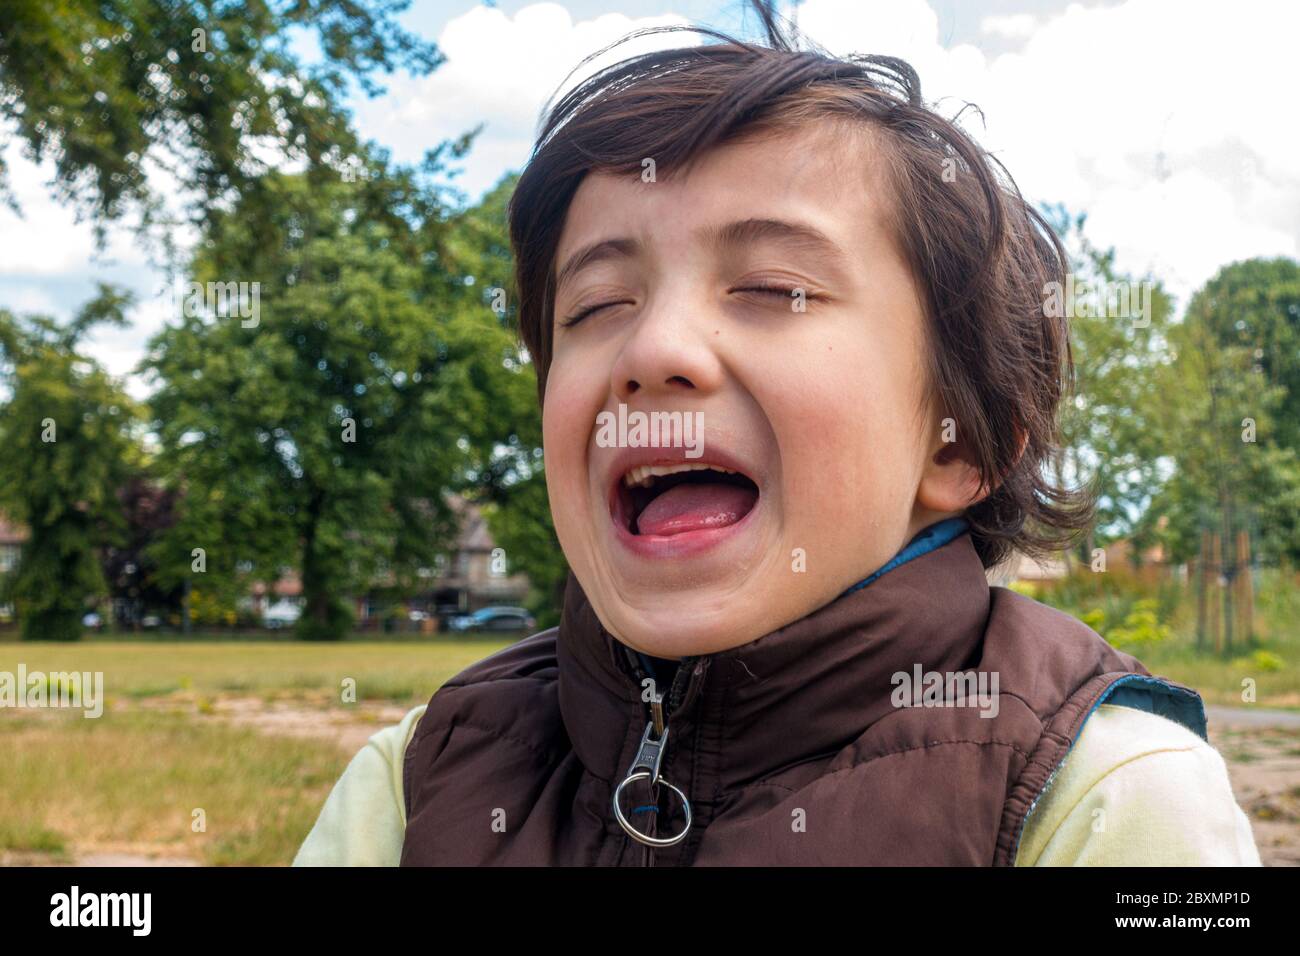 Un ritratto di un ragazzo con gli occhi chiusi e la bocca aperta catturati in mezzo alla risata, portato fuori nel parco locale Foto Stock